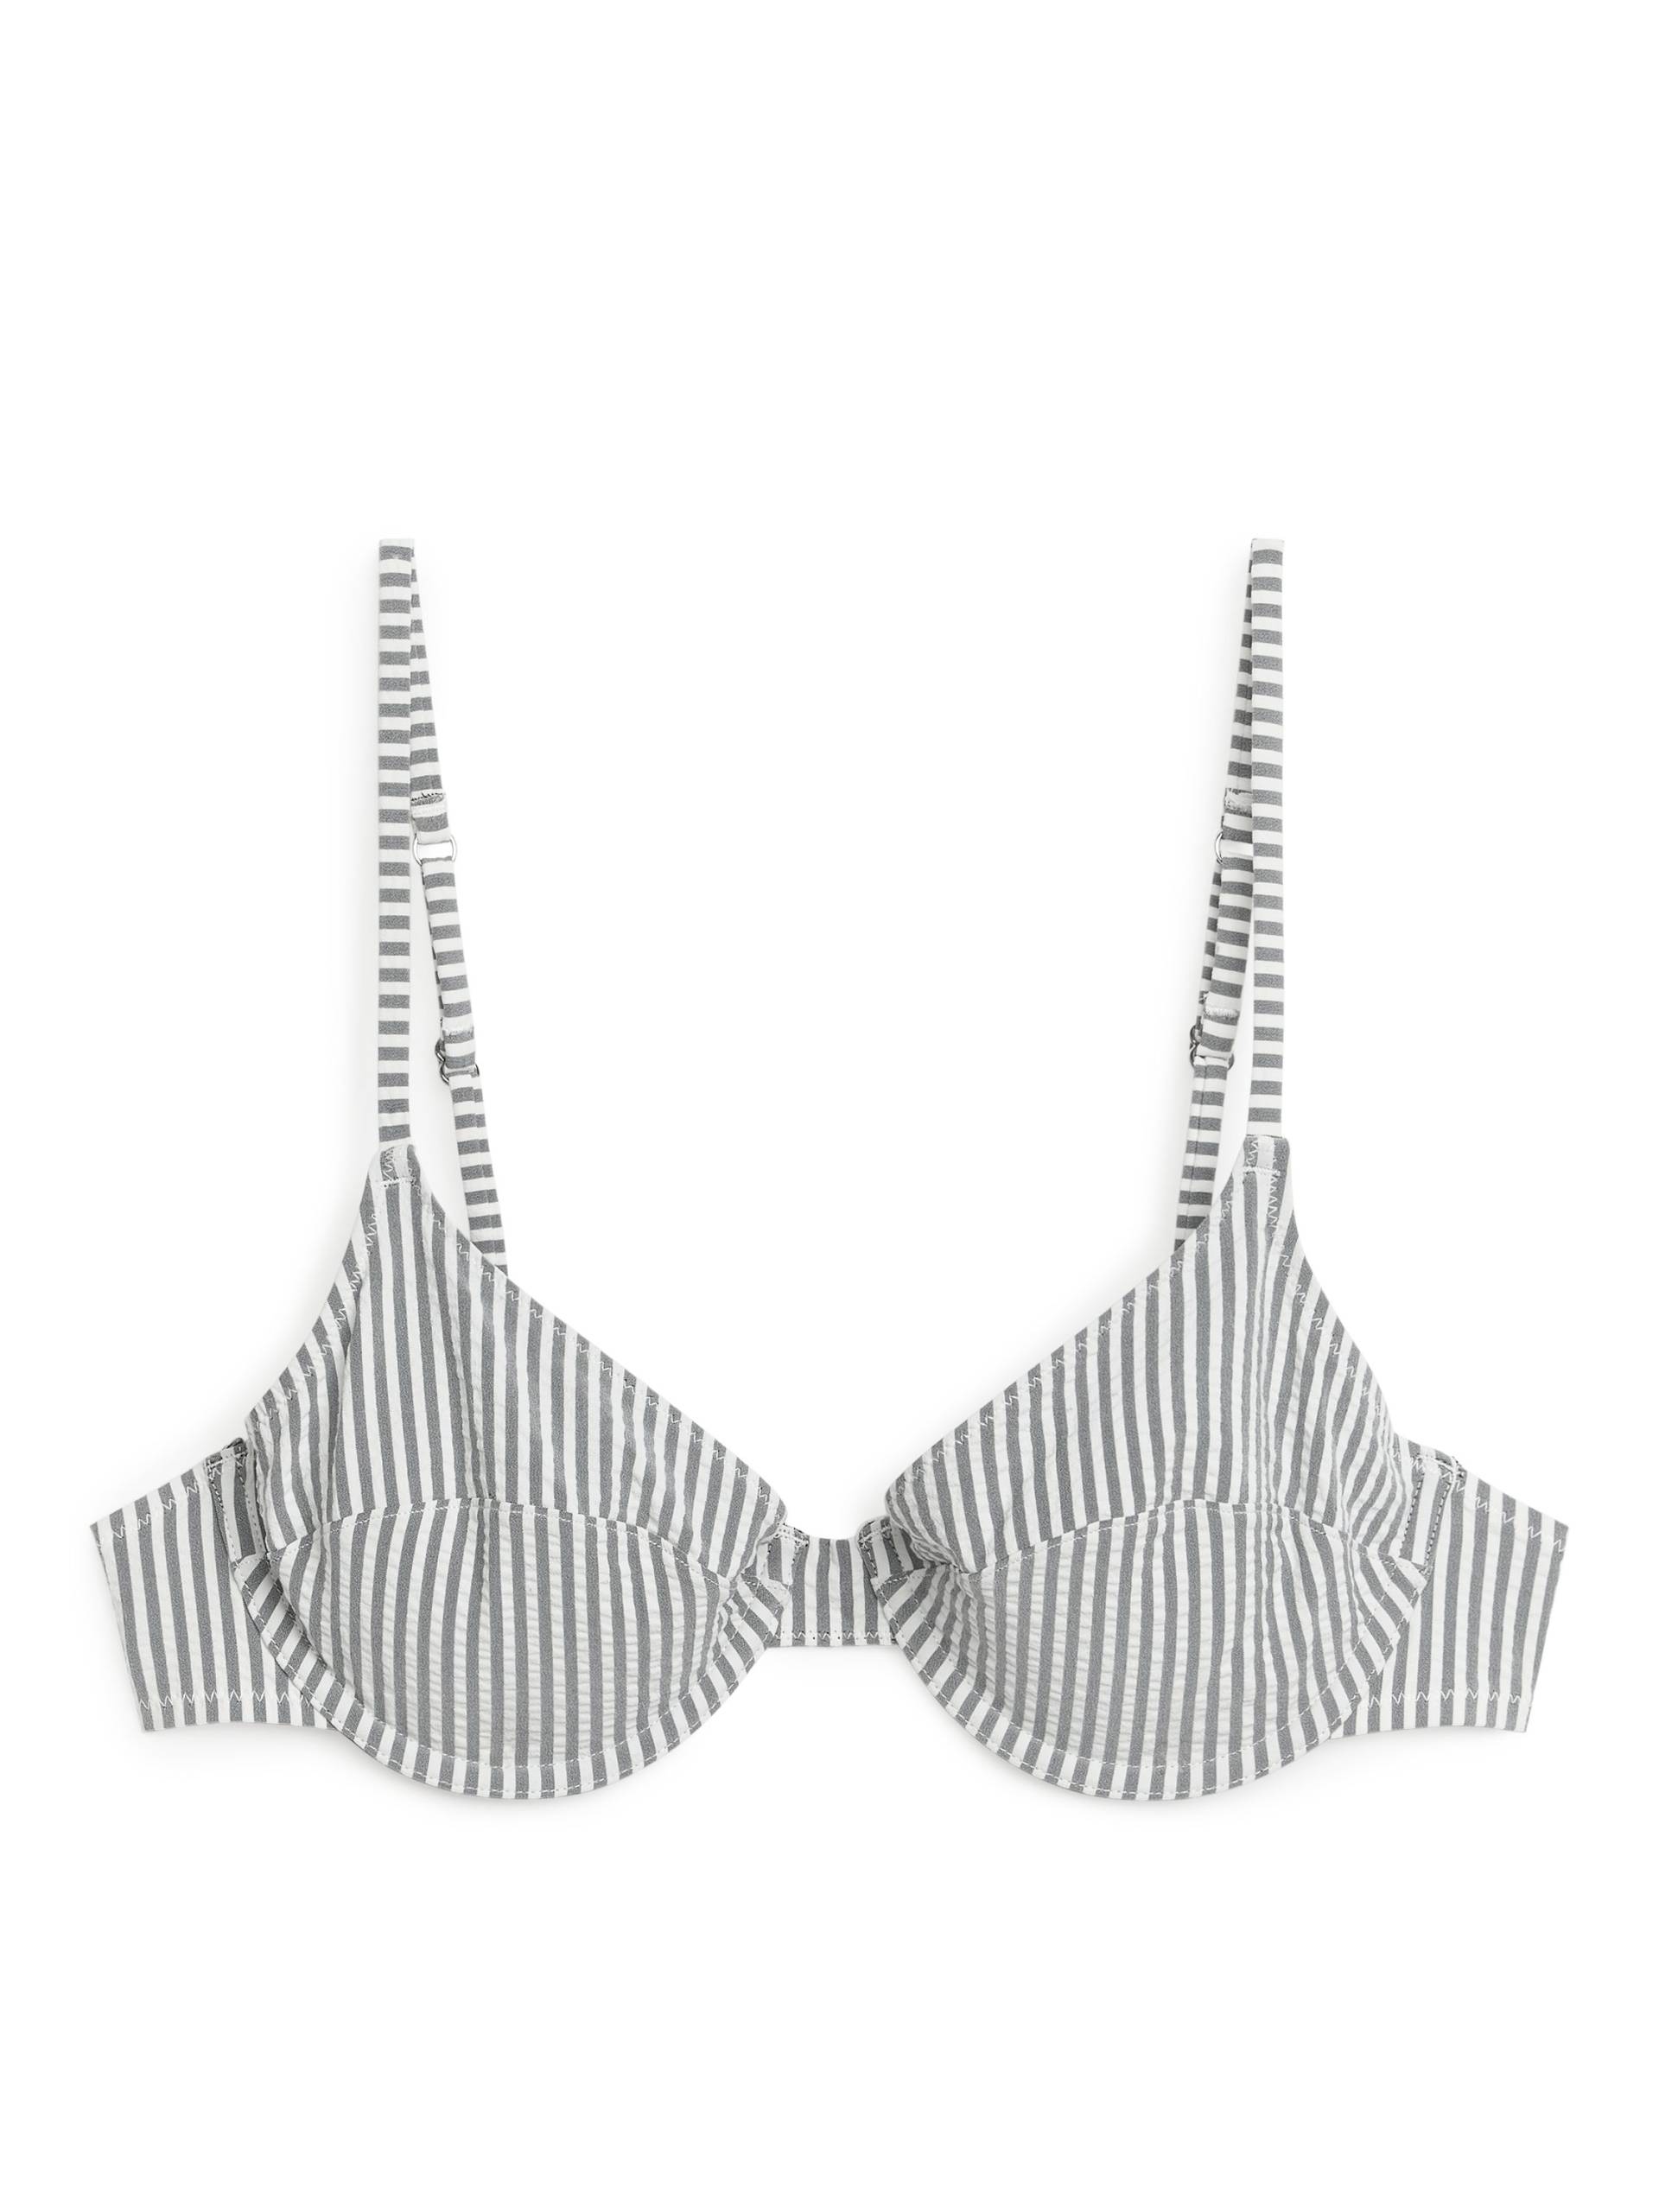 Arket Bikini-Oberteil mit Bügel aus Seersucker Schwarz/weiß gestreift in Größe 70C. Farbe: Black/white stripe von Arket